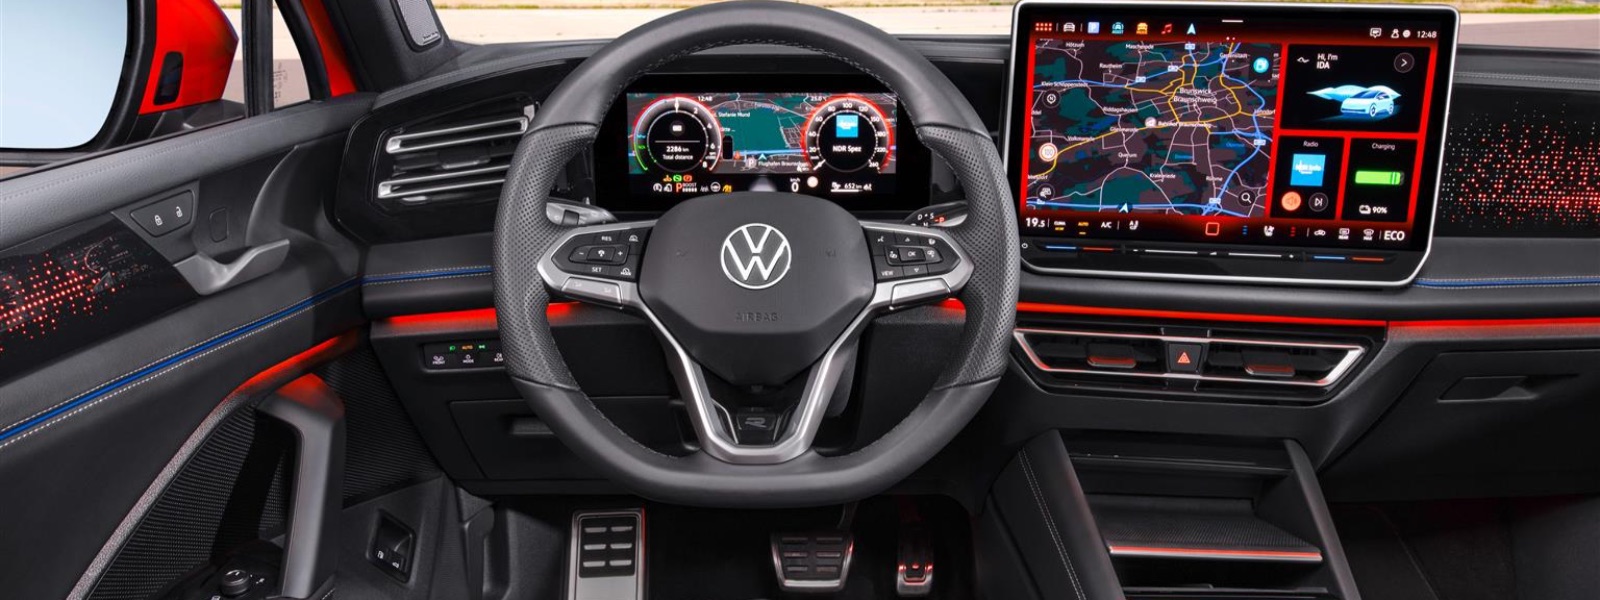 Volkswagen nuova Tiguan interni, il cambio passa al volante